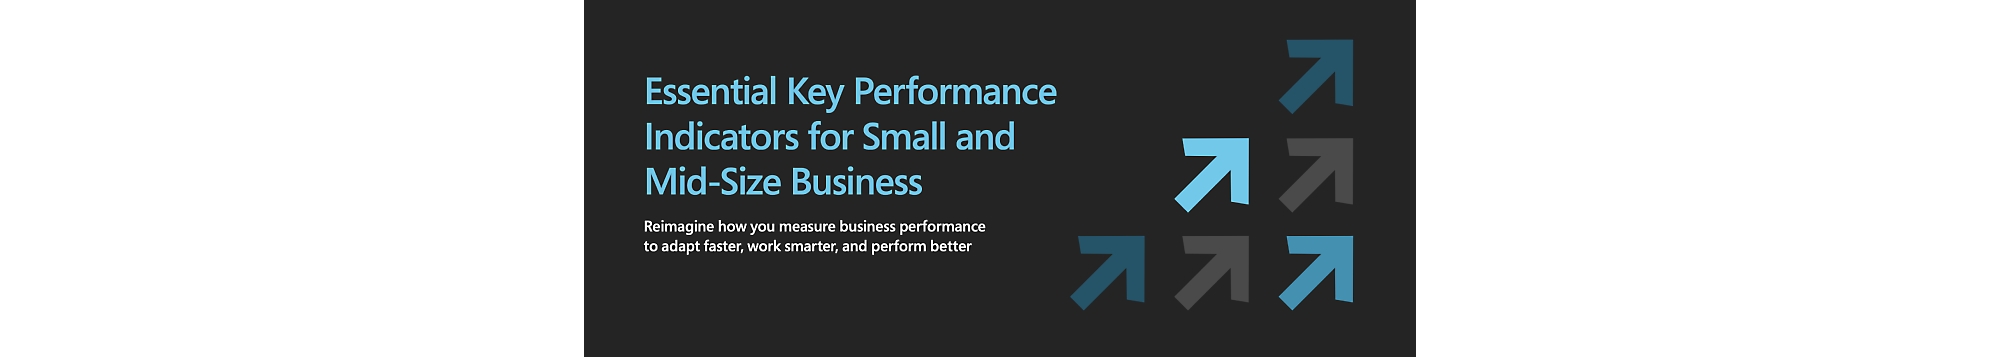 中小型企業的重要關鍵效能指標。